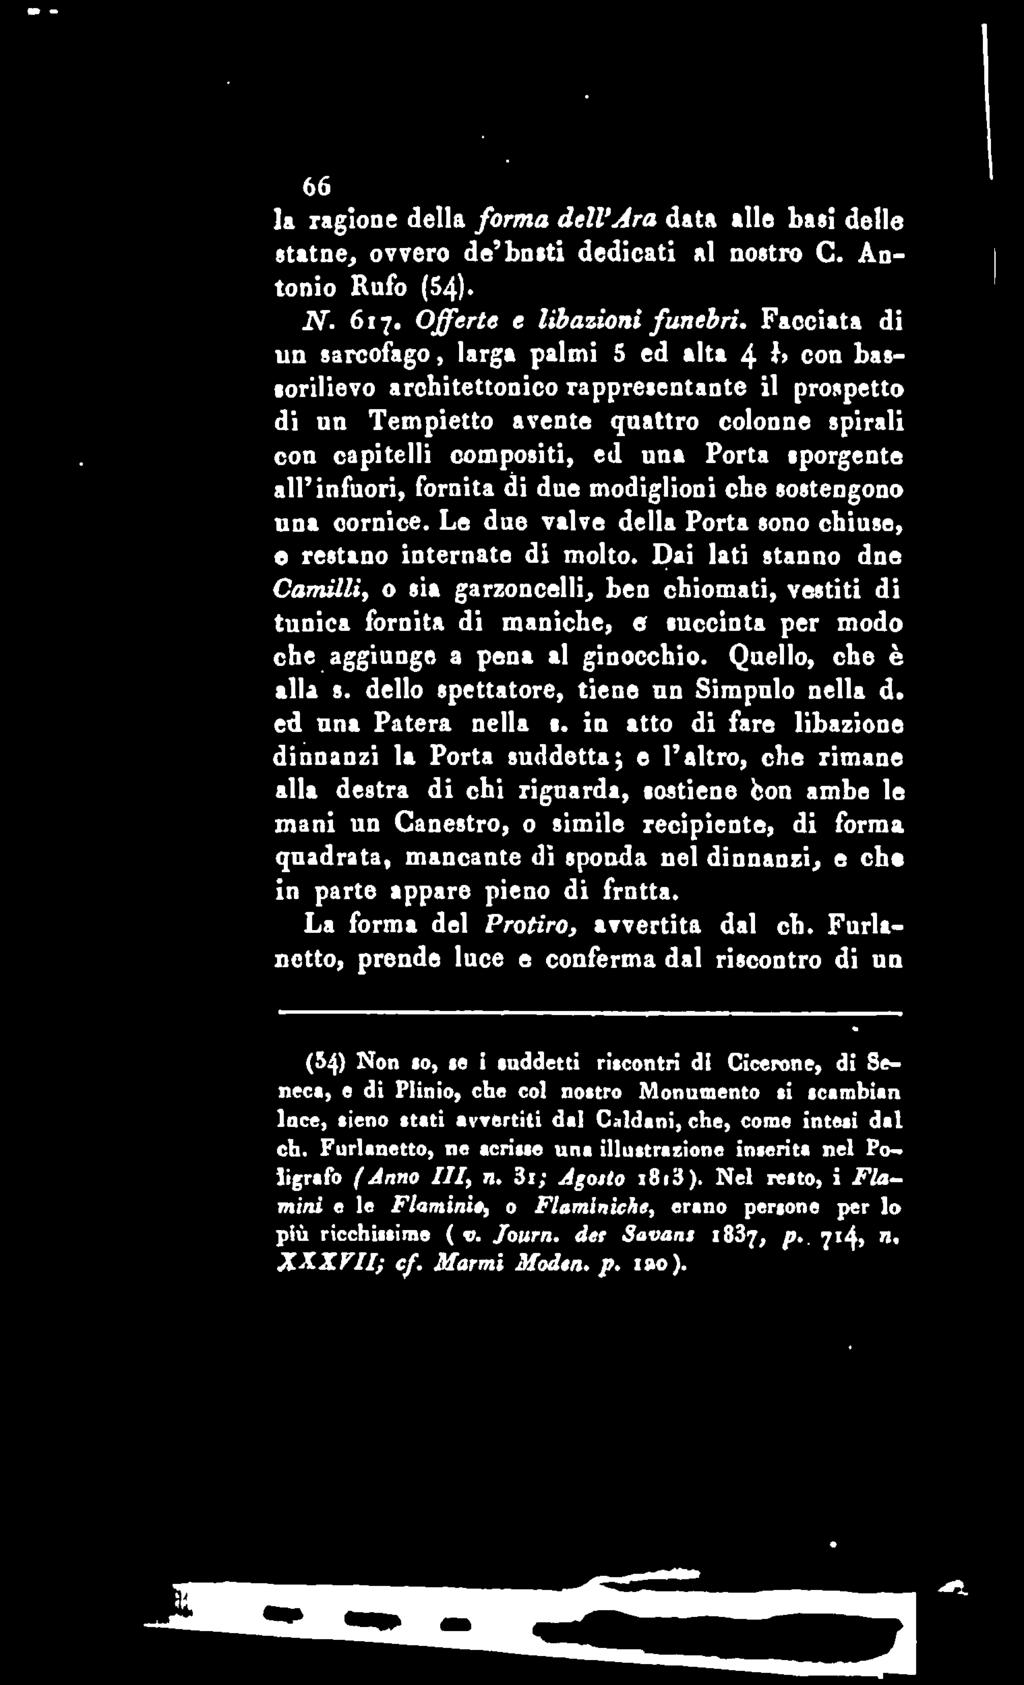 66 la ragione della forma delvara data alle basi delle atatue^ ovvero de busti dedicati al nostro G. Antonio Rufo (54). N. 617. Offerte e Ubazioni funebri.